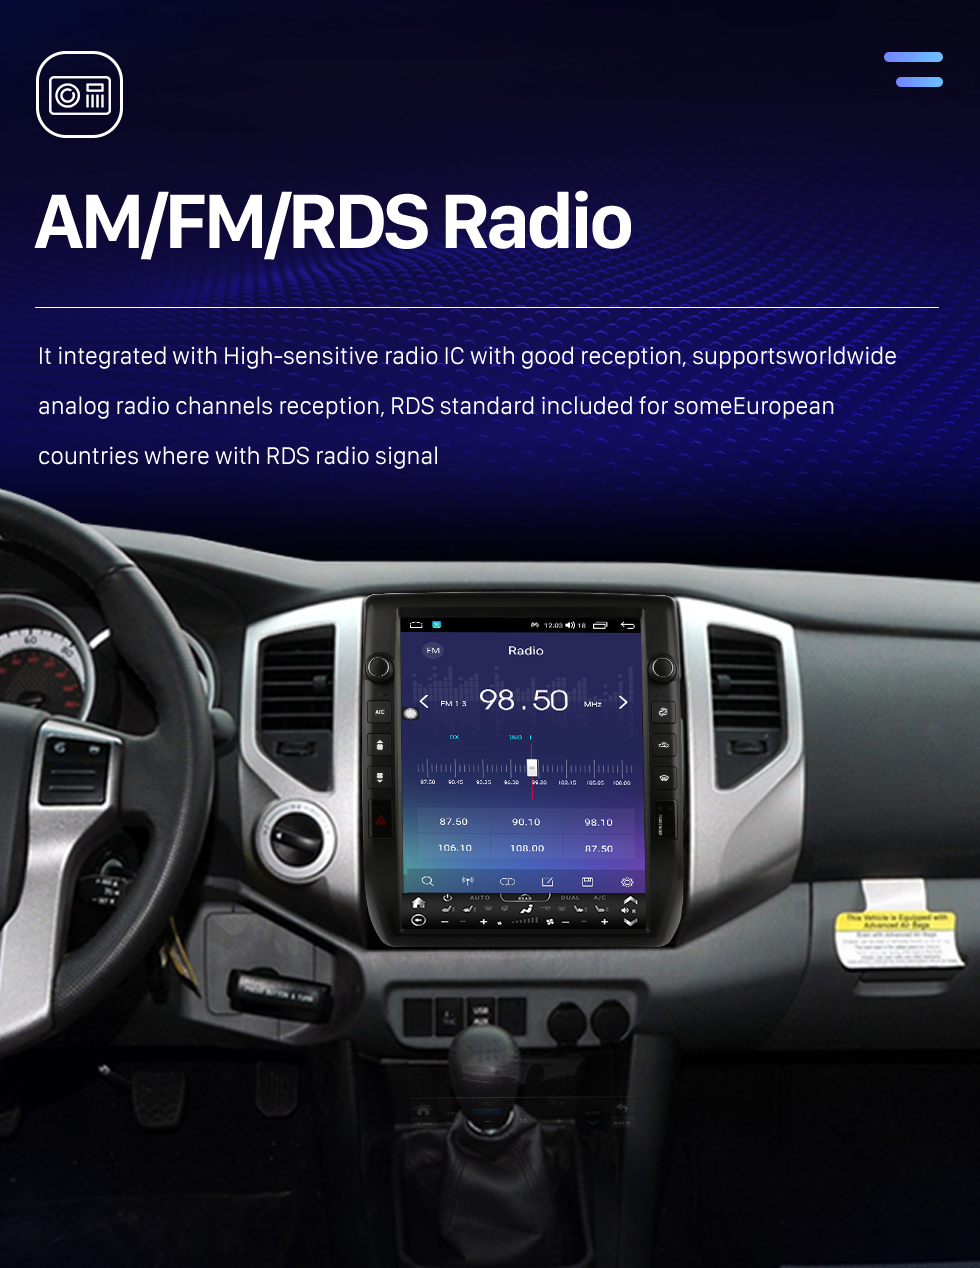 Seicane Radio de navegación GPS con pantalla táctil Android 10.0 HD de 12.1 pulgadas para TOYOTA Tacoma 2005 2006 2007 2008-2015 con soporte Bluetooth Carplay Cámara TPMS AHD